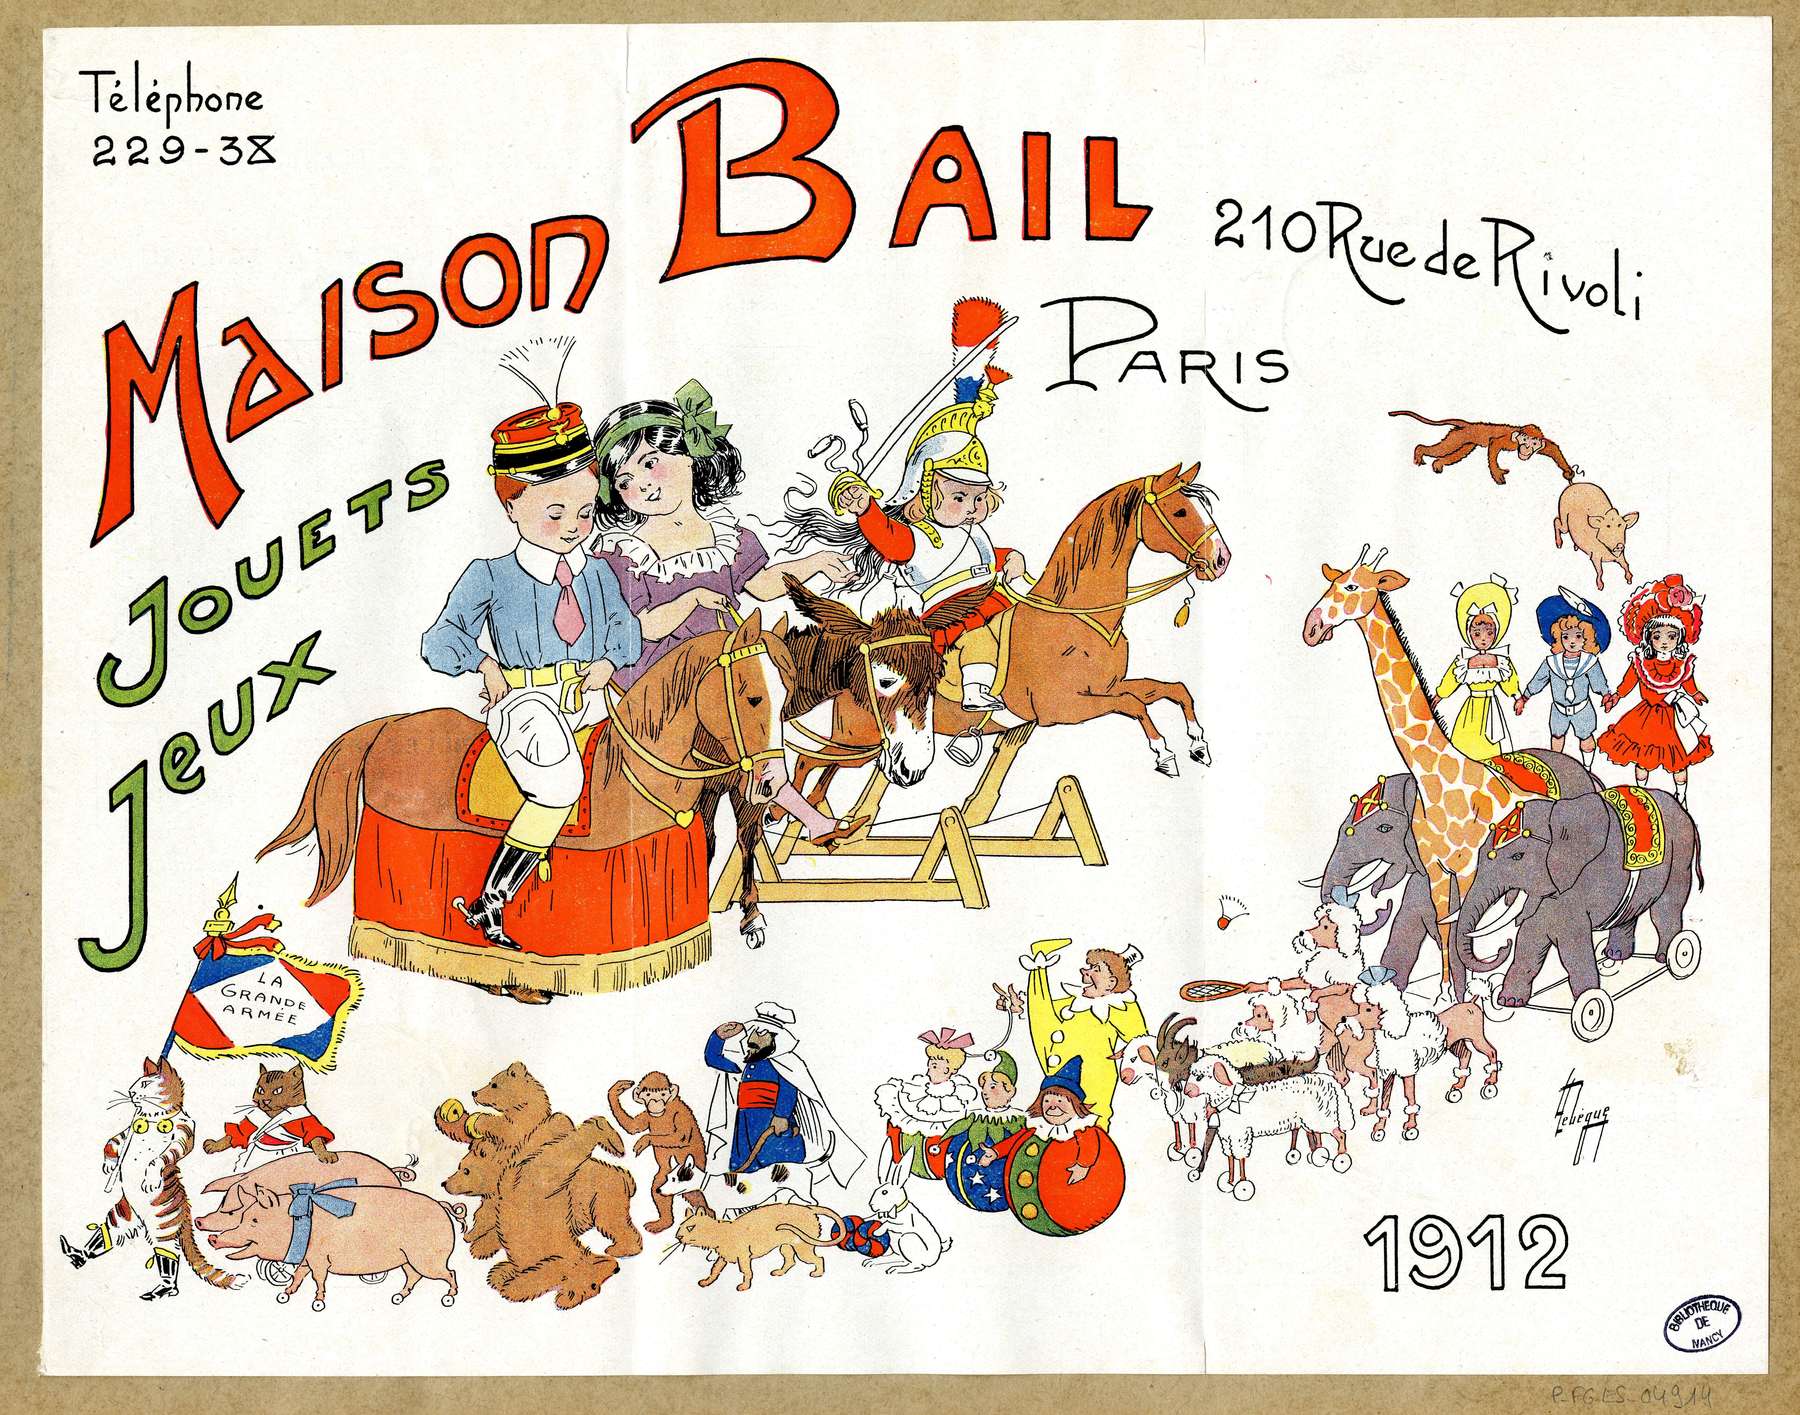 Contenu du "Maison Bail" Paris 1912